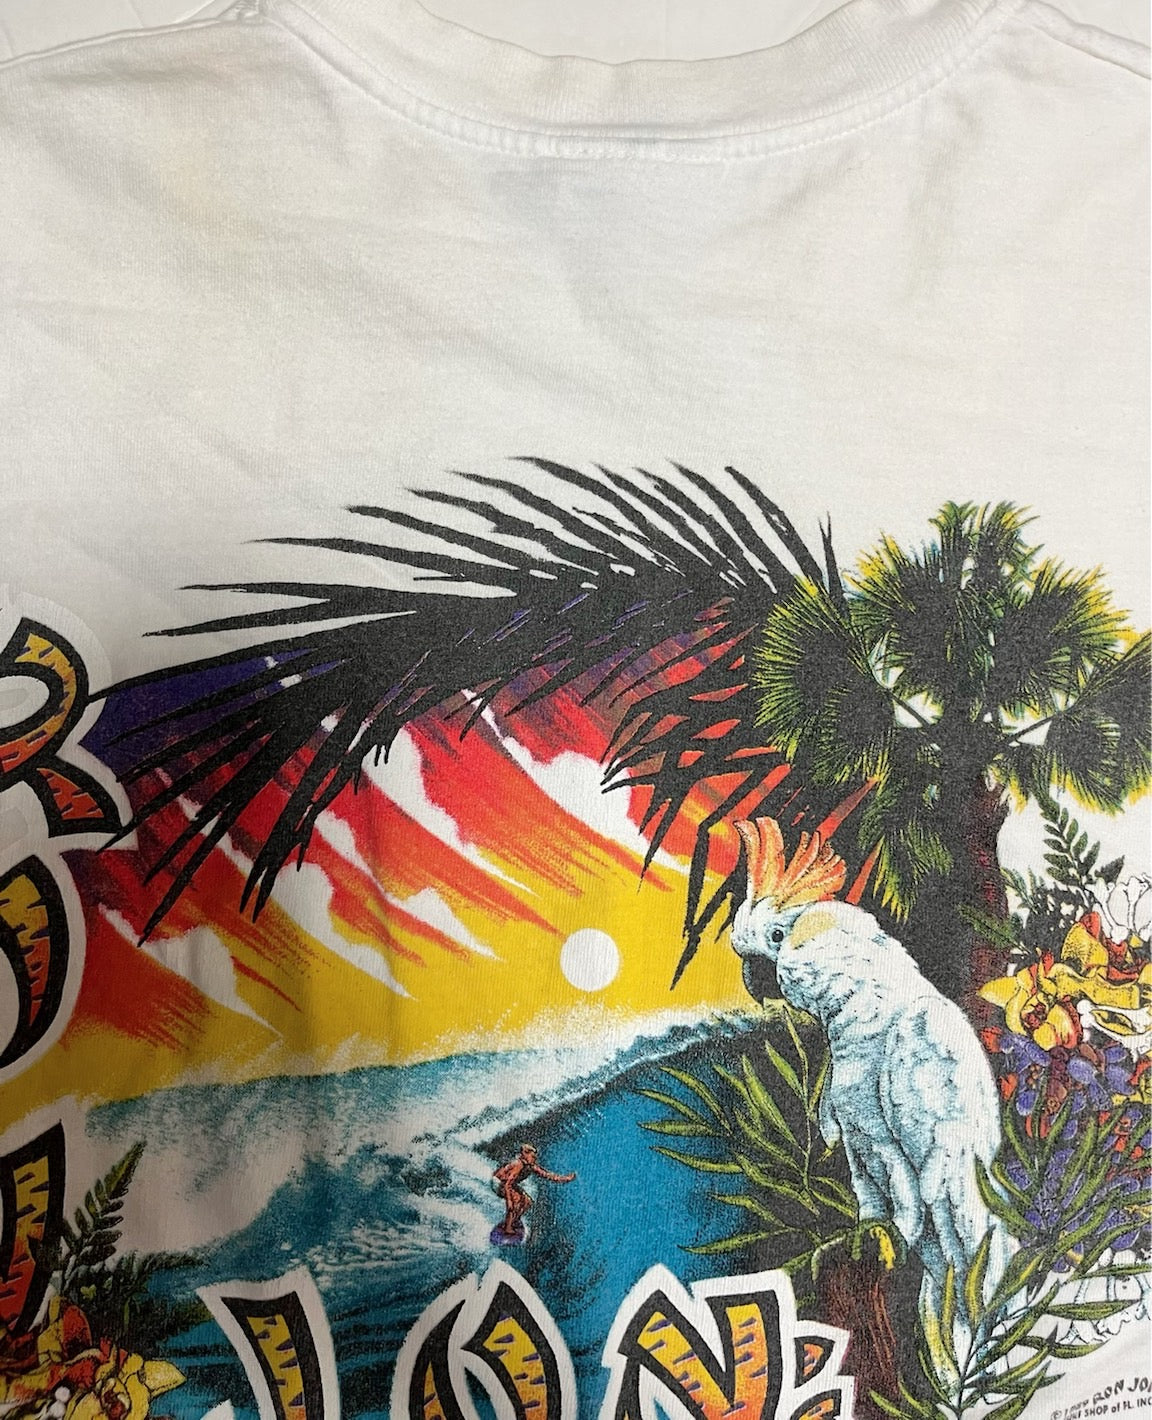 【RON JON】90's RonJon Surf Shop Vintage T-Shirt  （men's S)